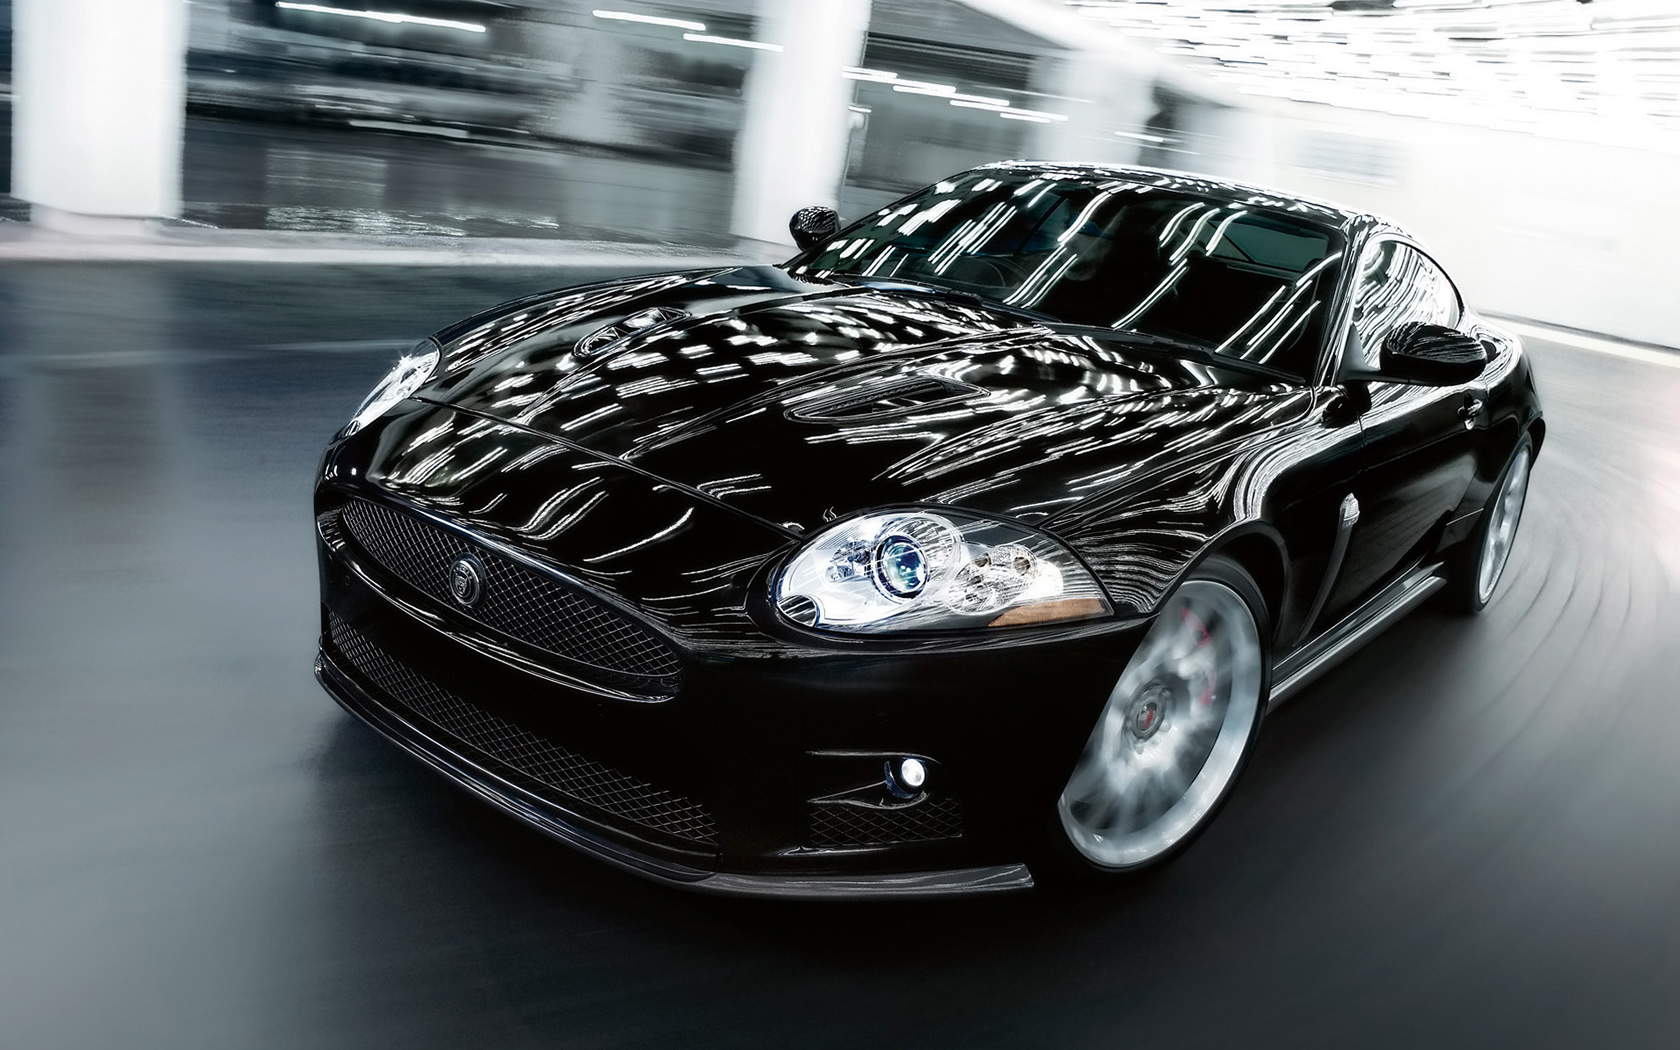 Download HQ Jaguar wallpaper / Cars / 1680x1050